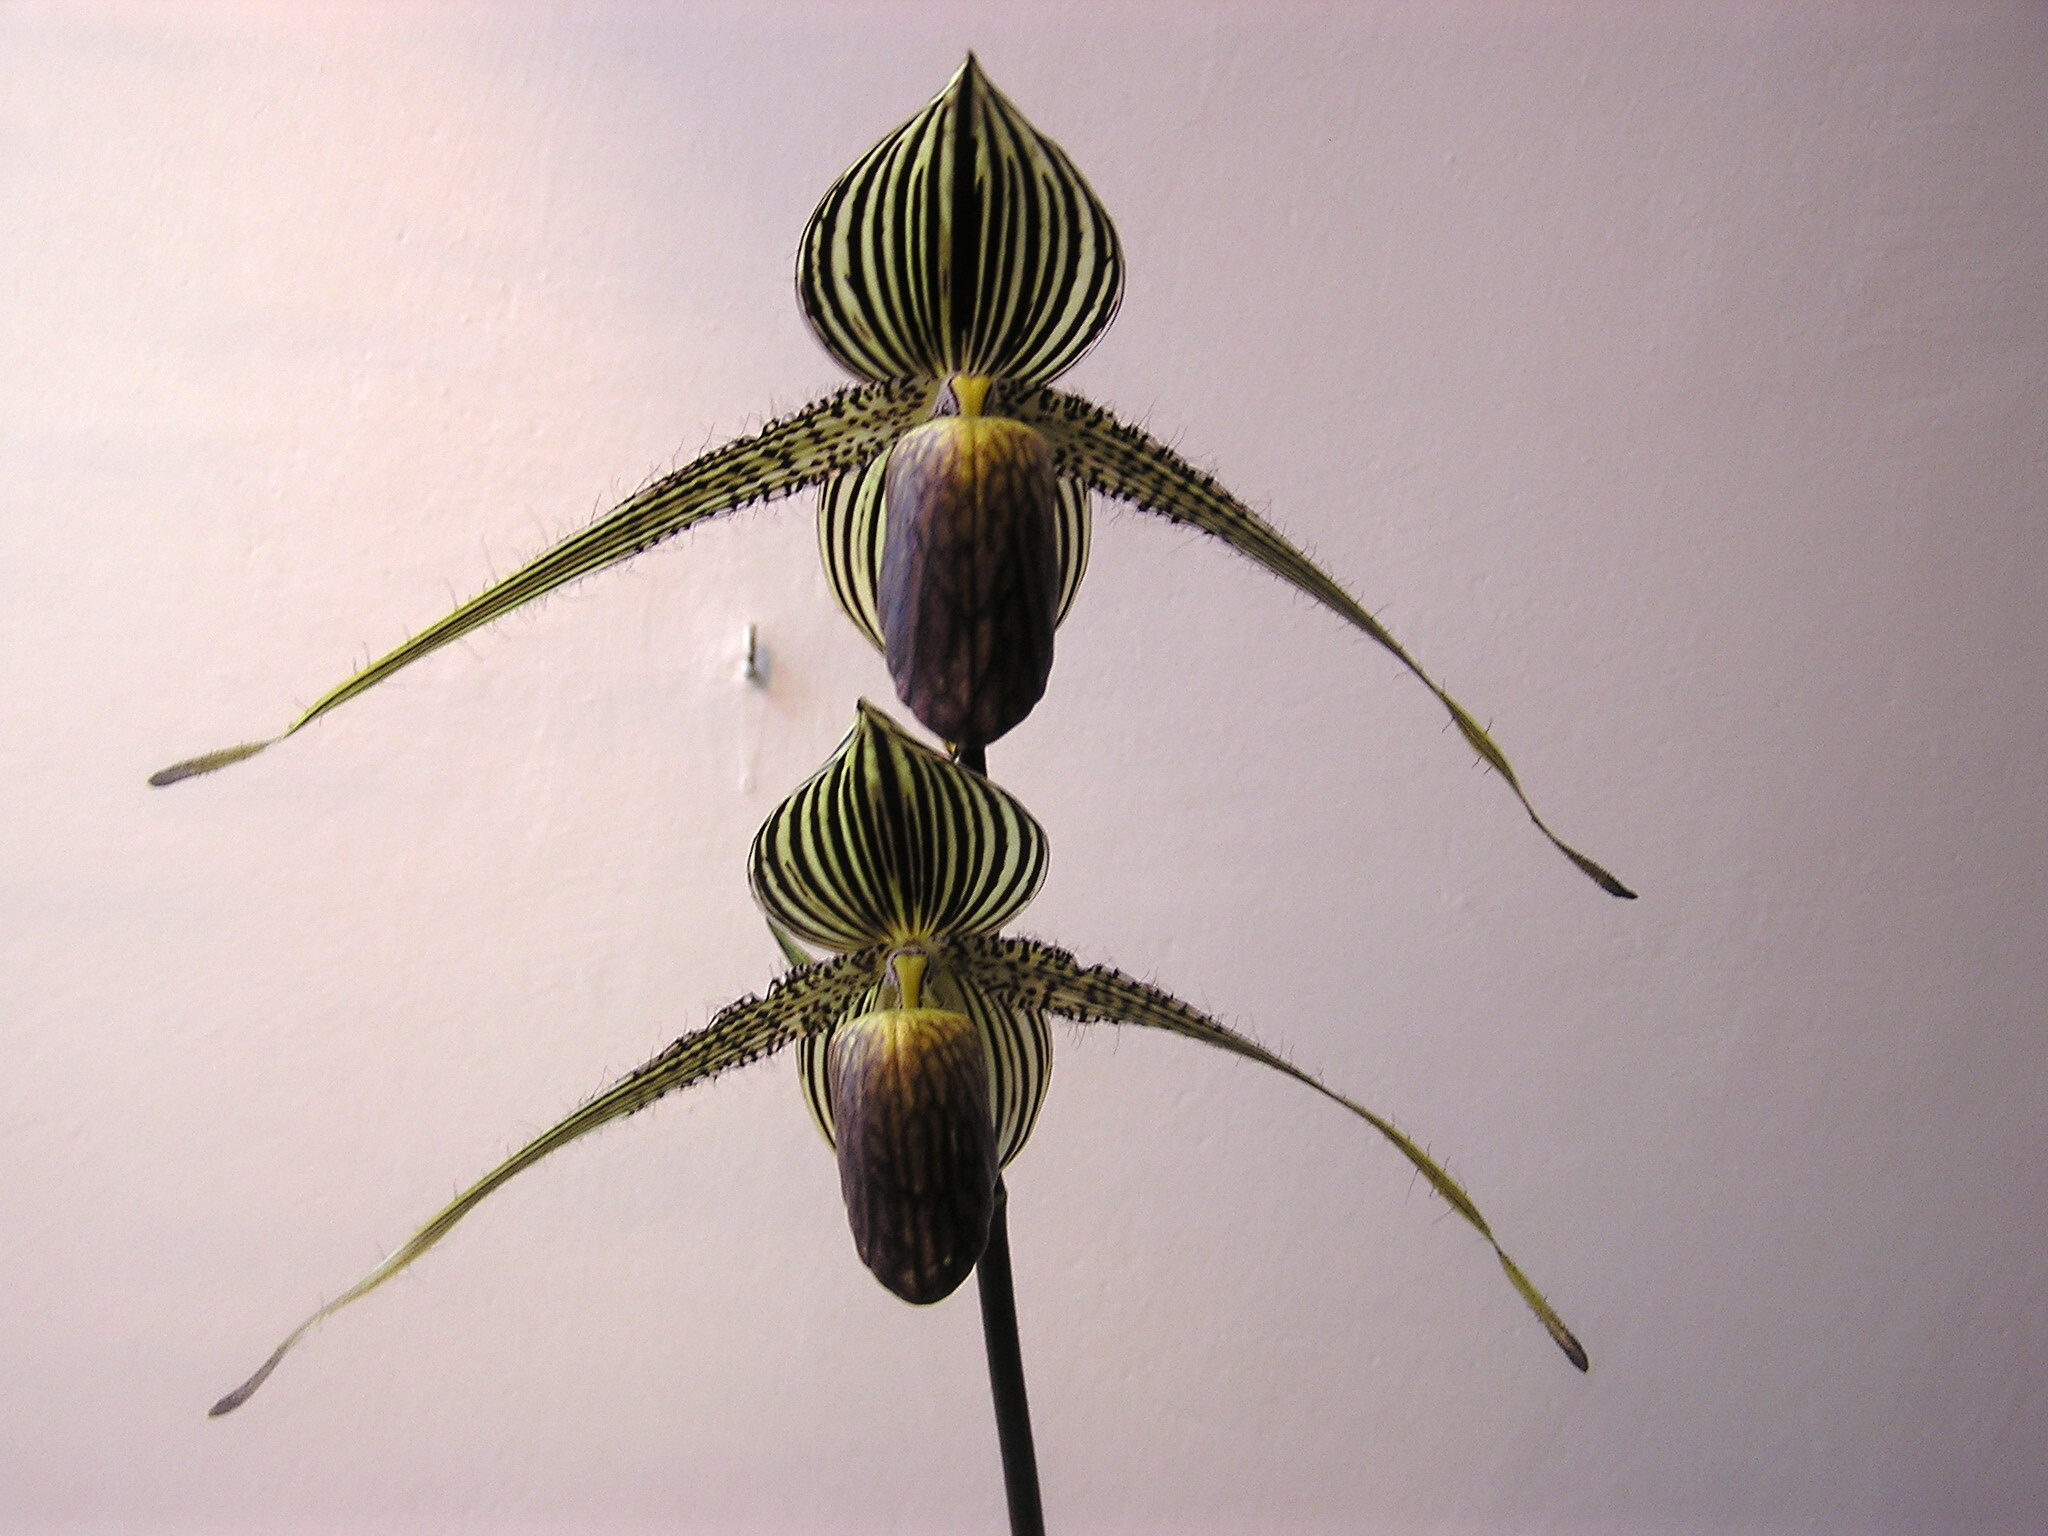 P.rotschildianum